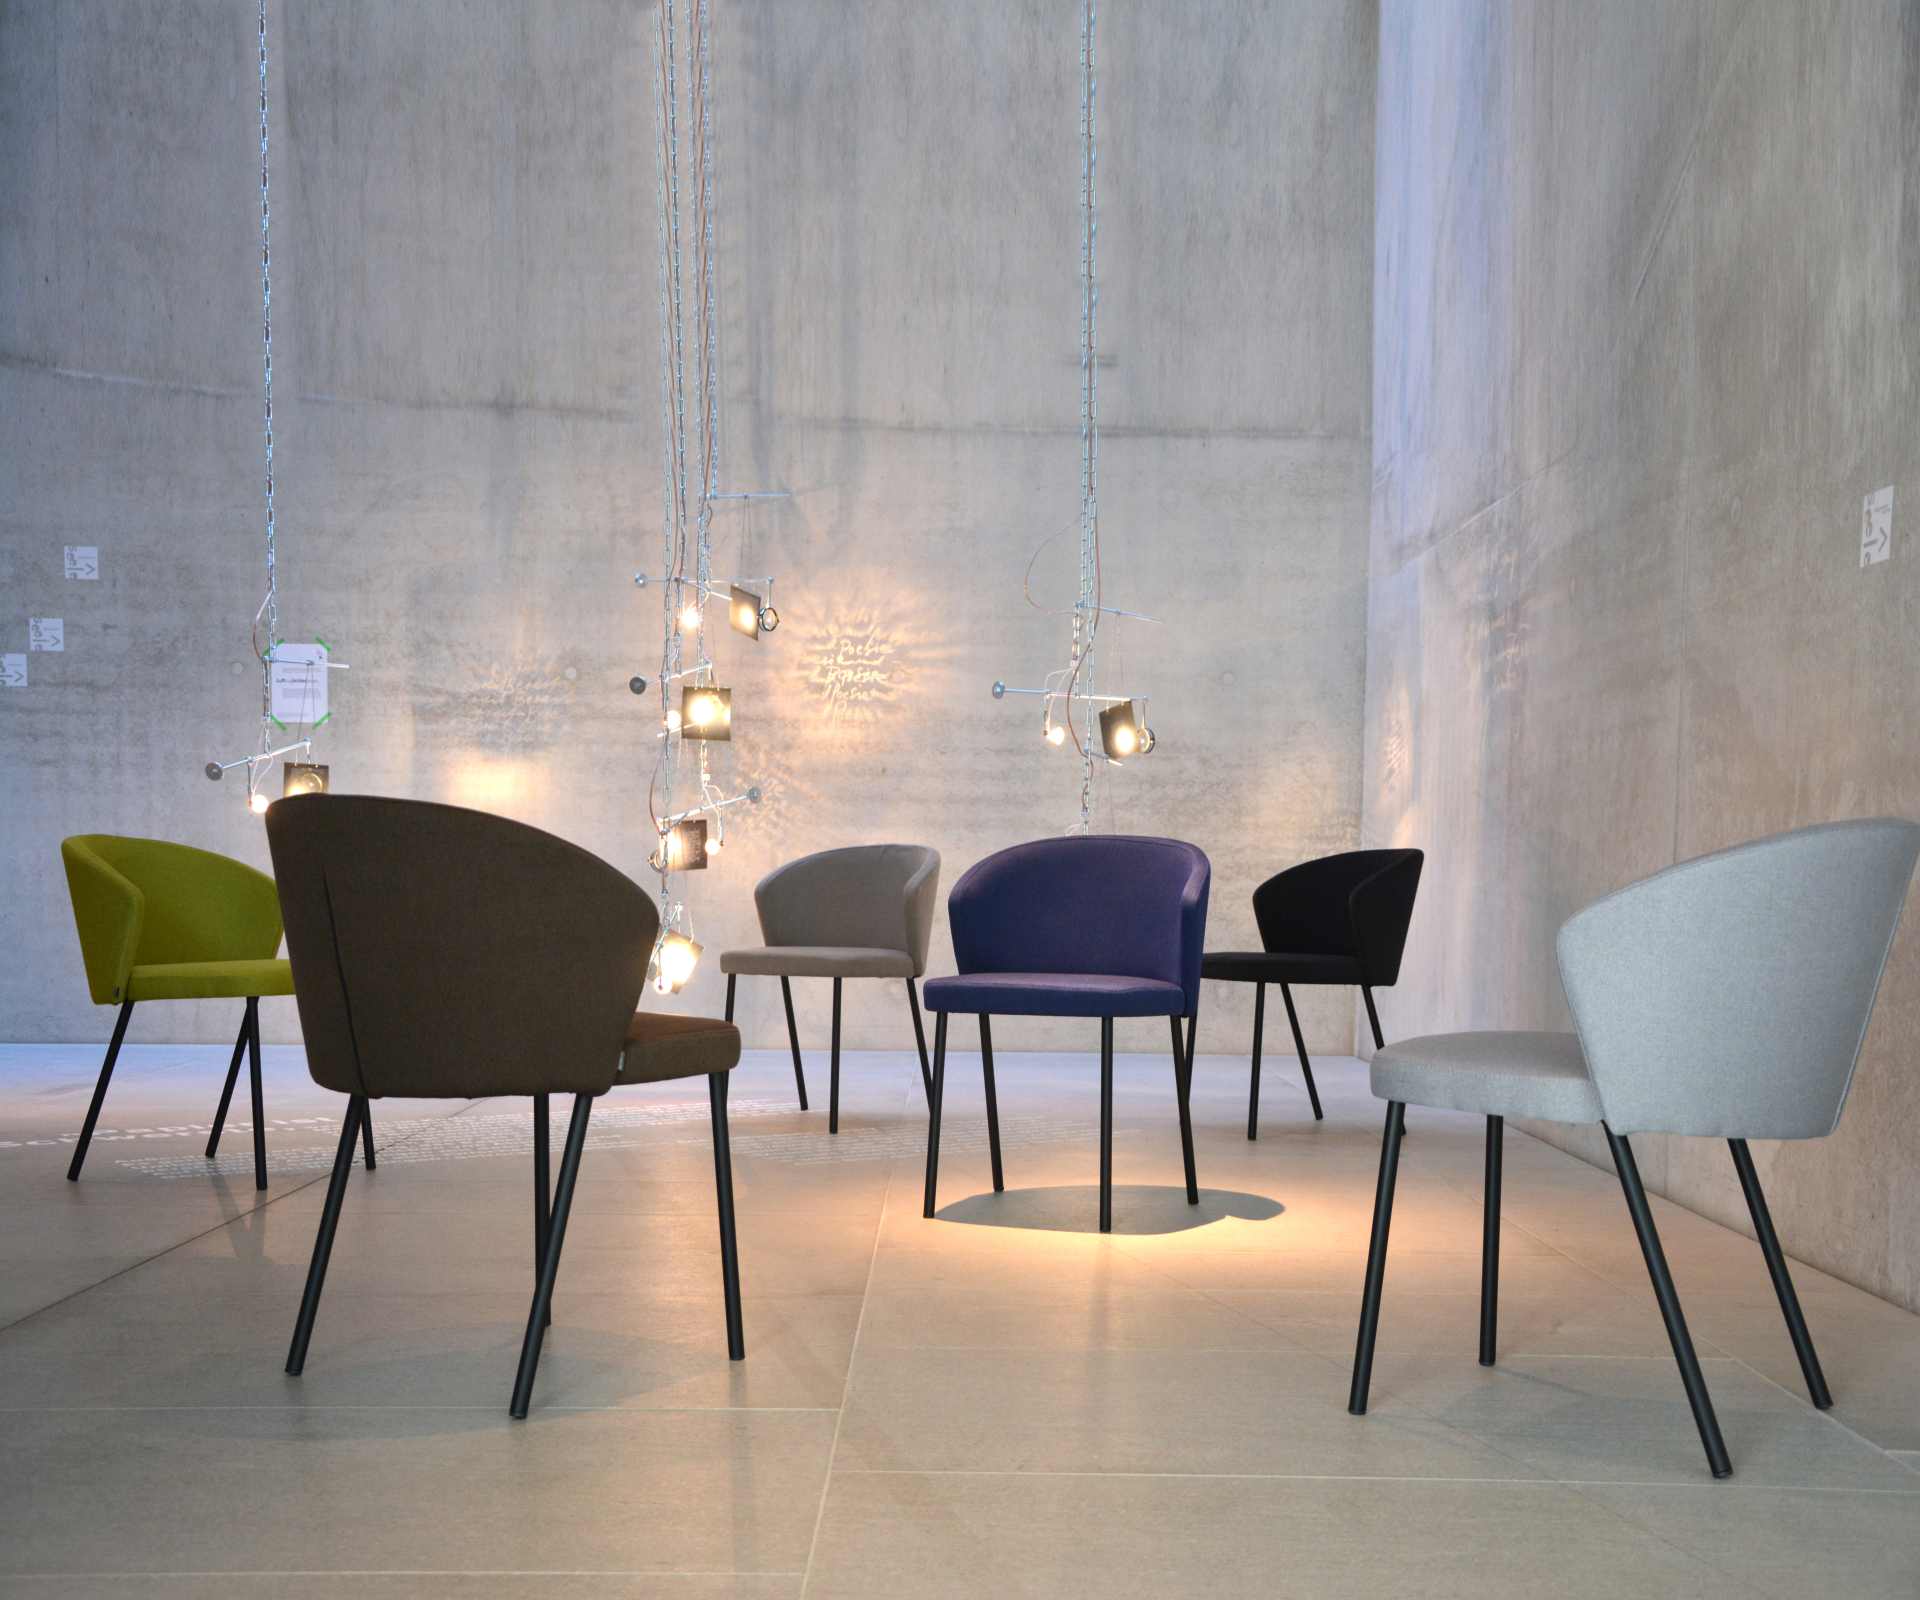 Der moderne Stuhl Mila wurde aus einem Metall Gestell hergestellt. Die Sitz- und Rückenfläche ist aus einem Stoff Bezug. Die Farbe des Stuhls ist Hellgrau. Es ist ein Produkt der Marke Jan Kurtz.